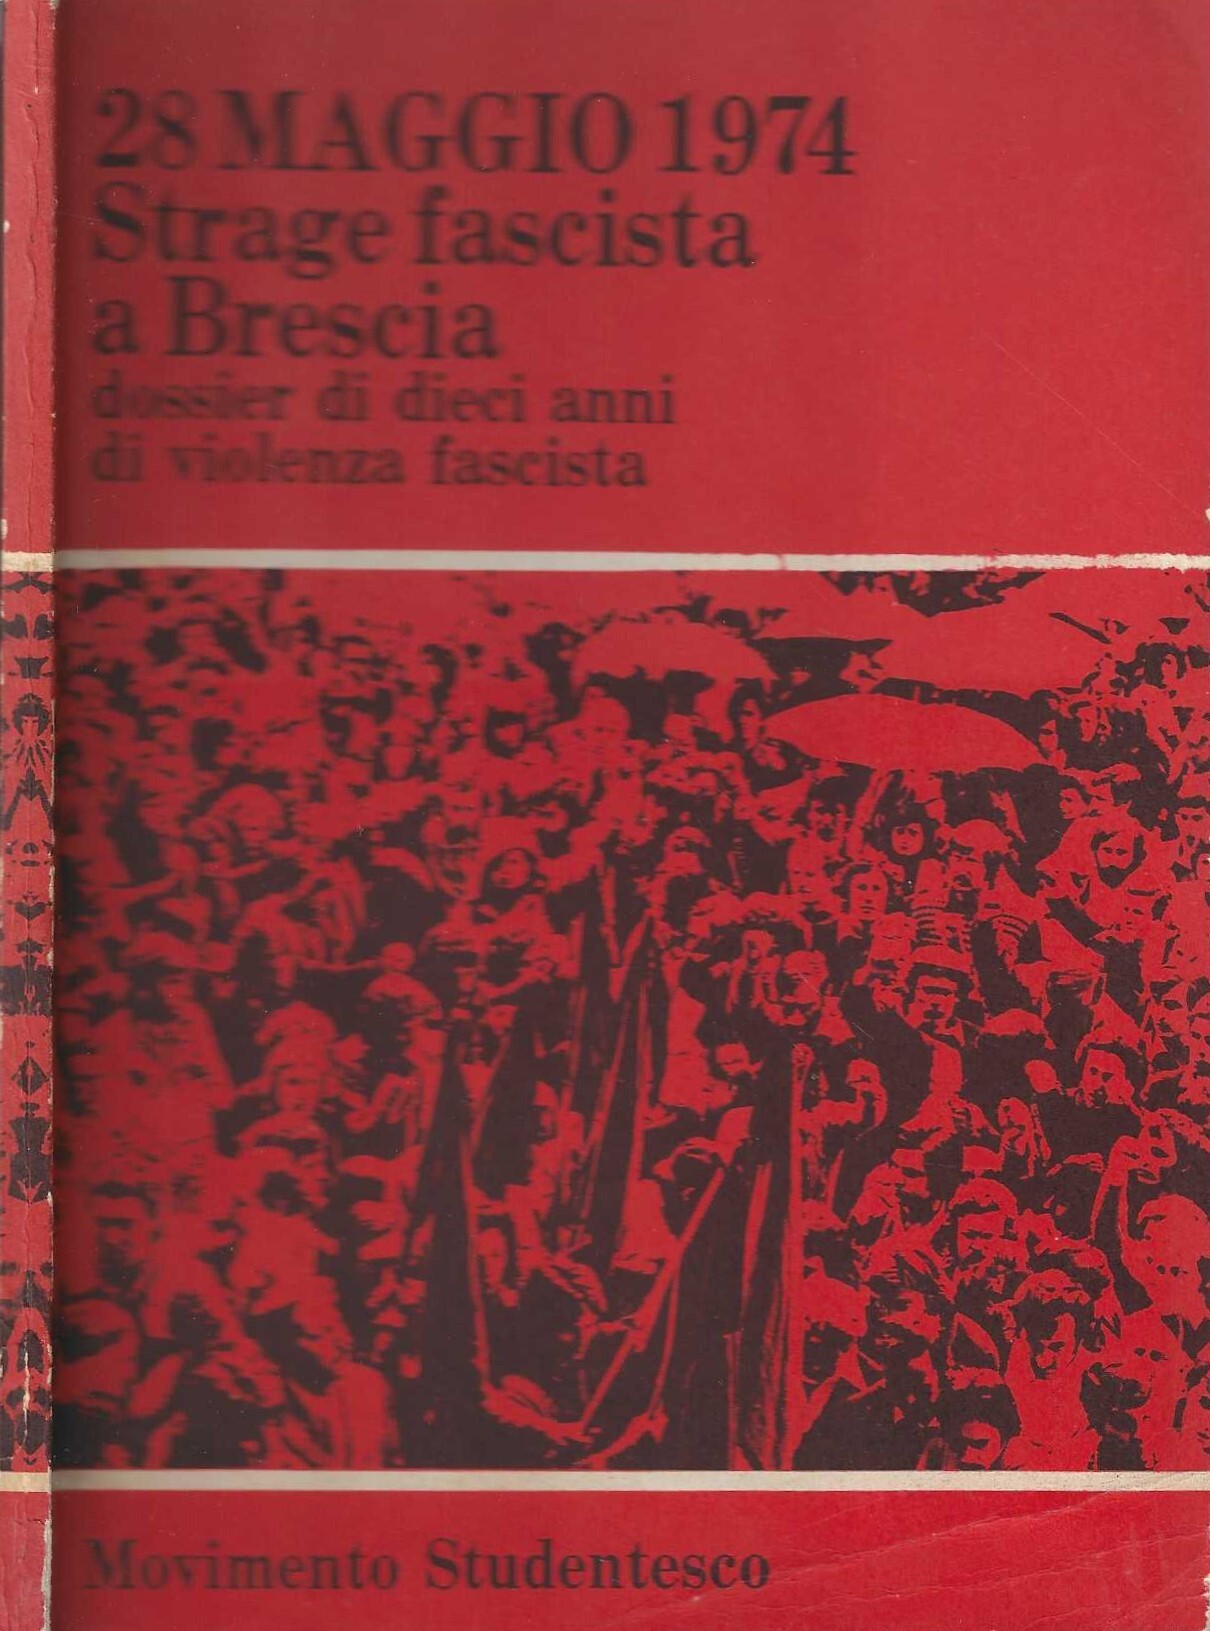 28 Maggio 1974 Strage fascista a Brescia. Dossier di dieci …